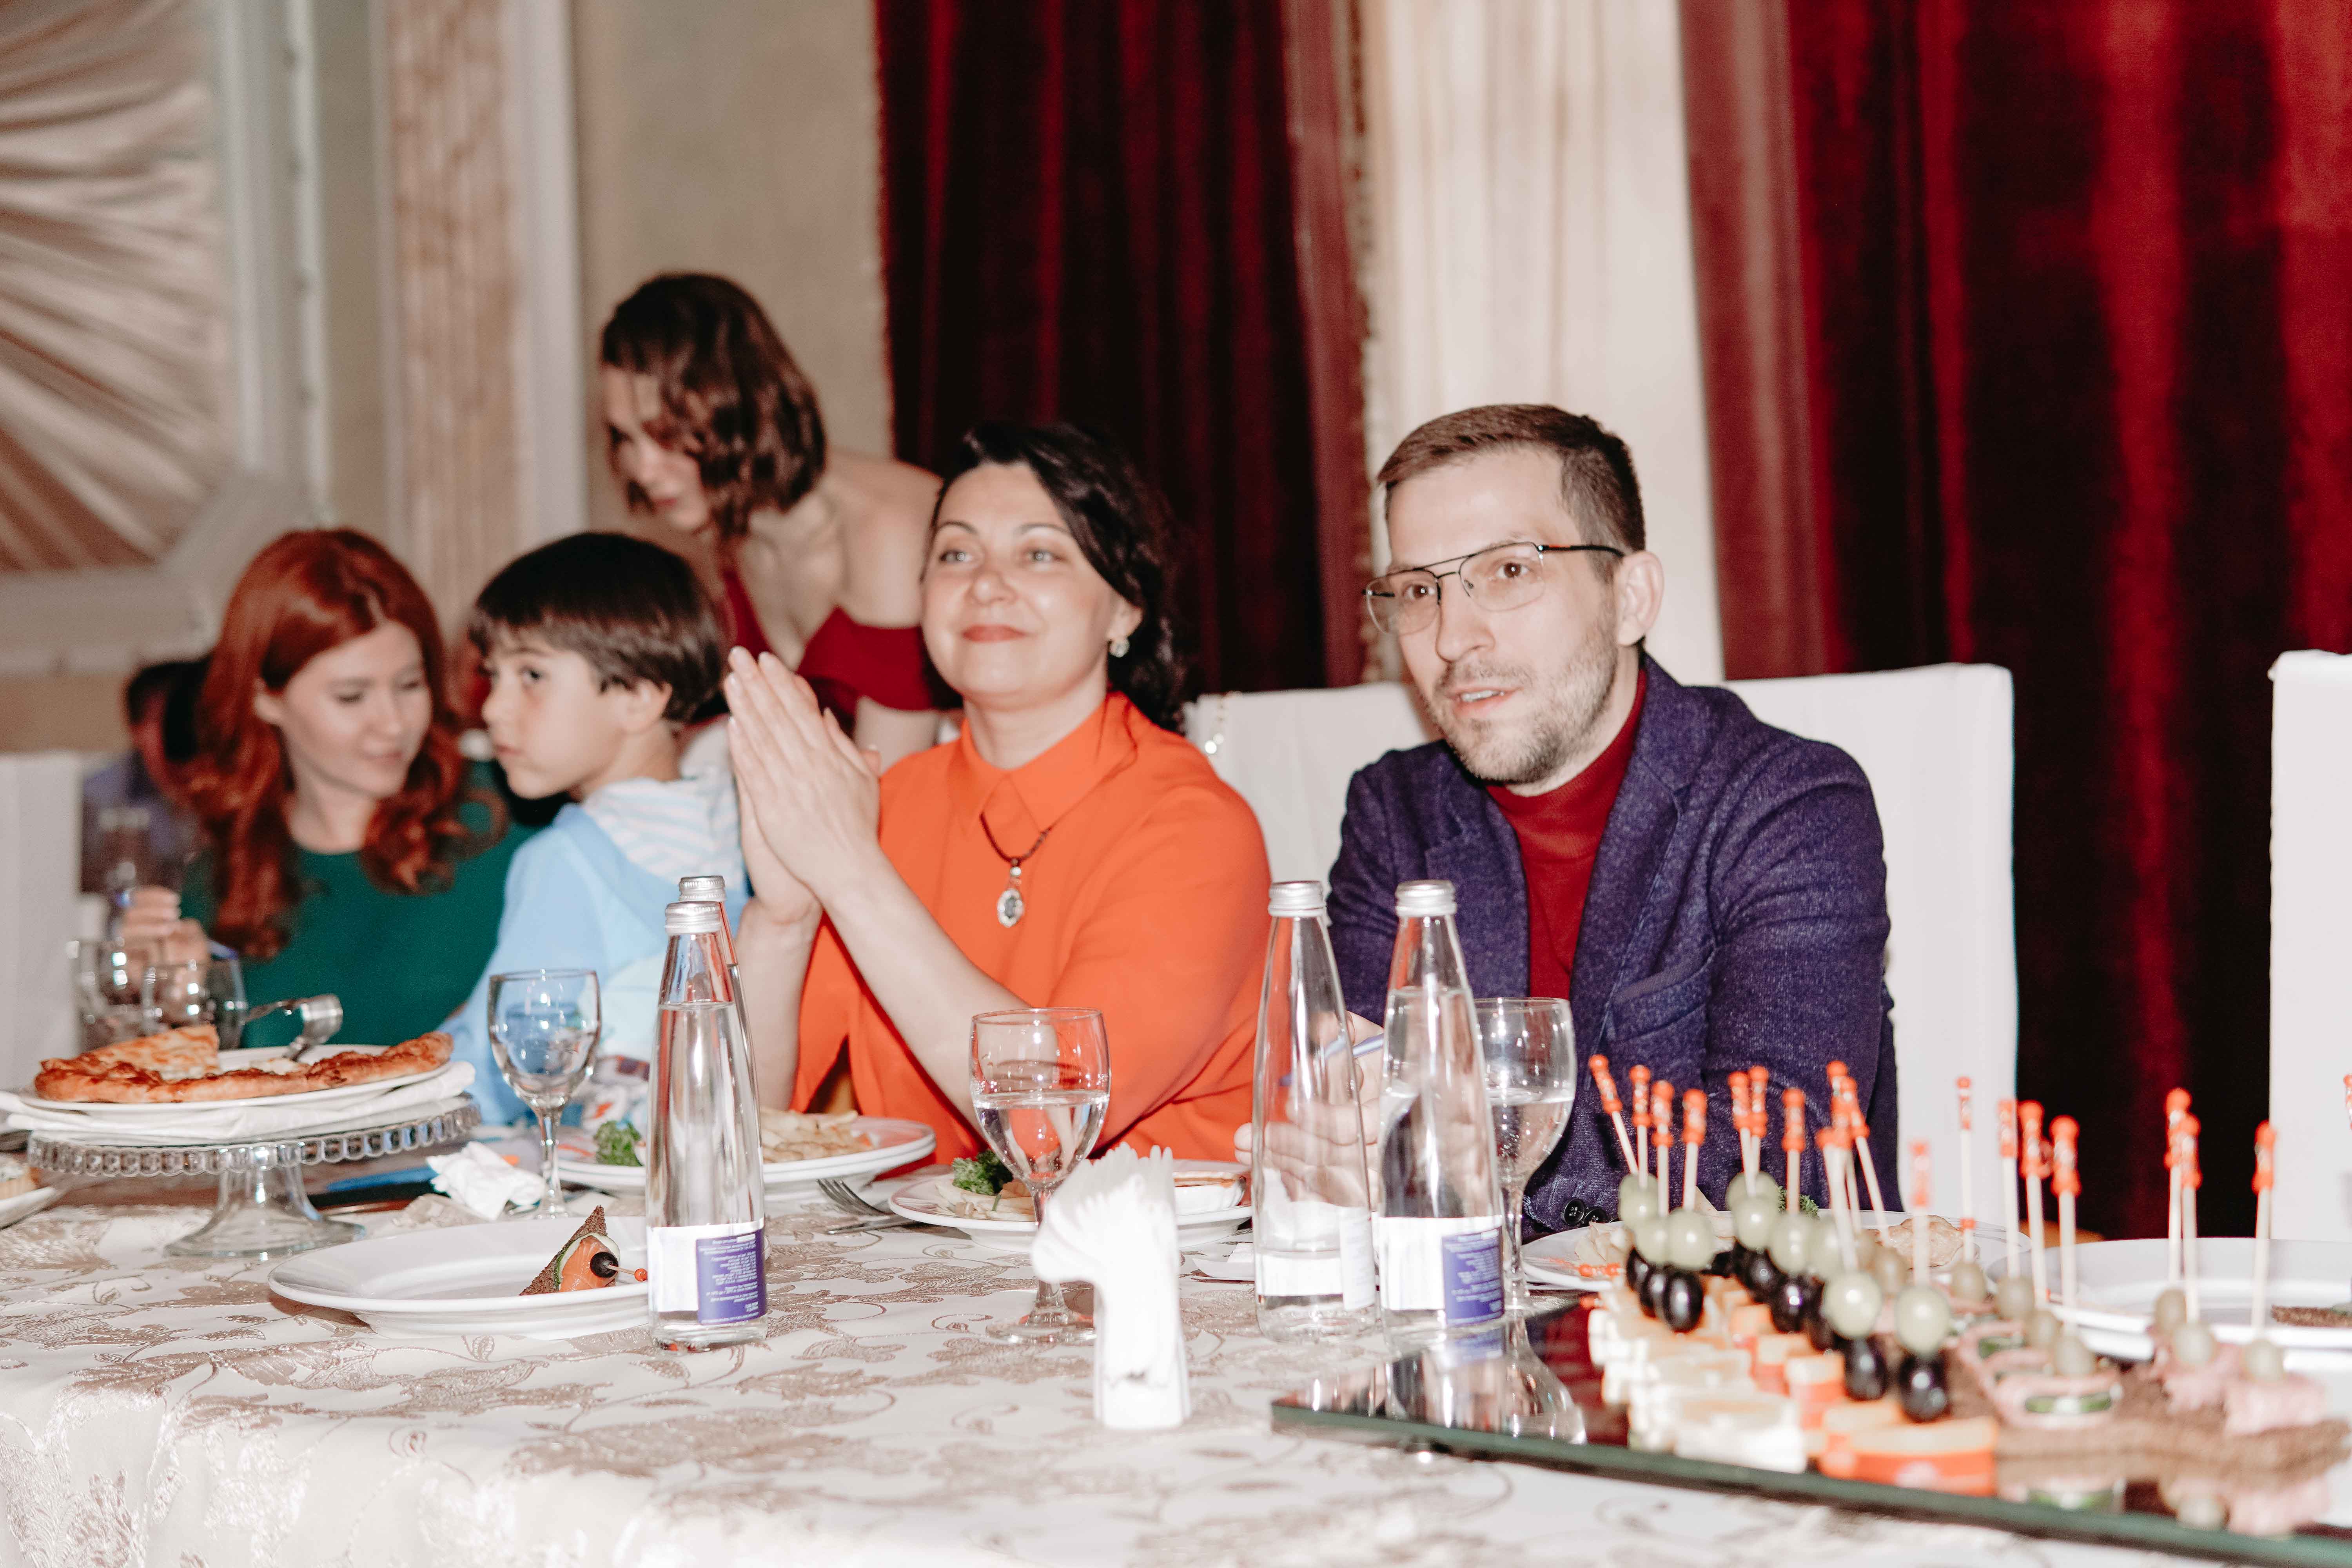 фото: 31 мая в Москве состоялась детская Премия «Kids Love».